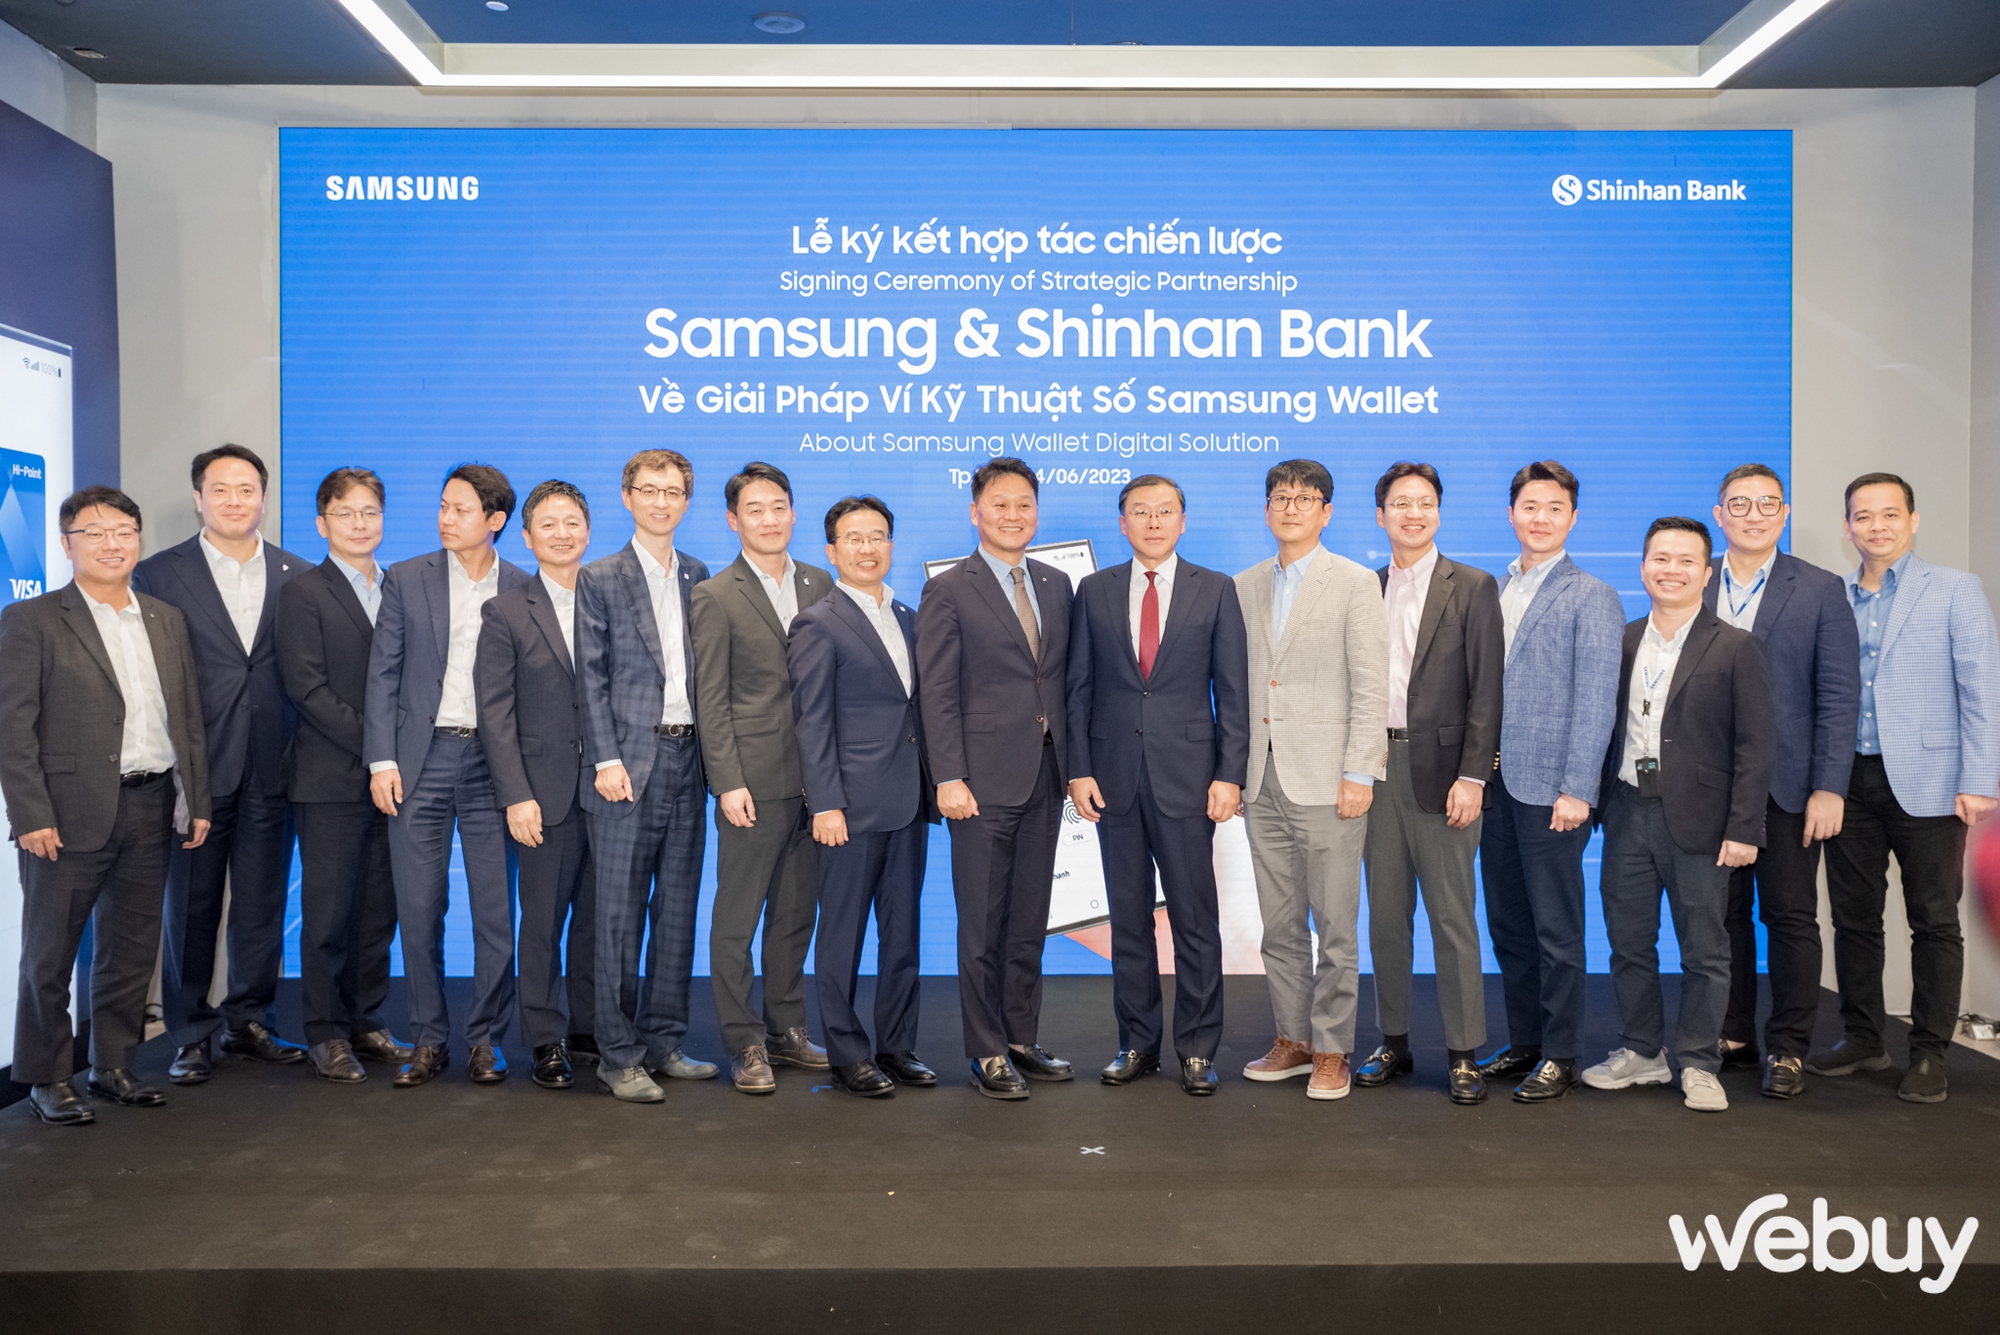 Samsung “bắt tay” Shinhan Bank, đẩy mạnh triển khai ví kỹ thuật số Samsung Wallet đến người tiêu dùng Việt - Ảnh 6.